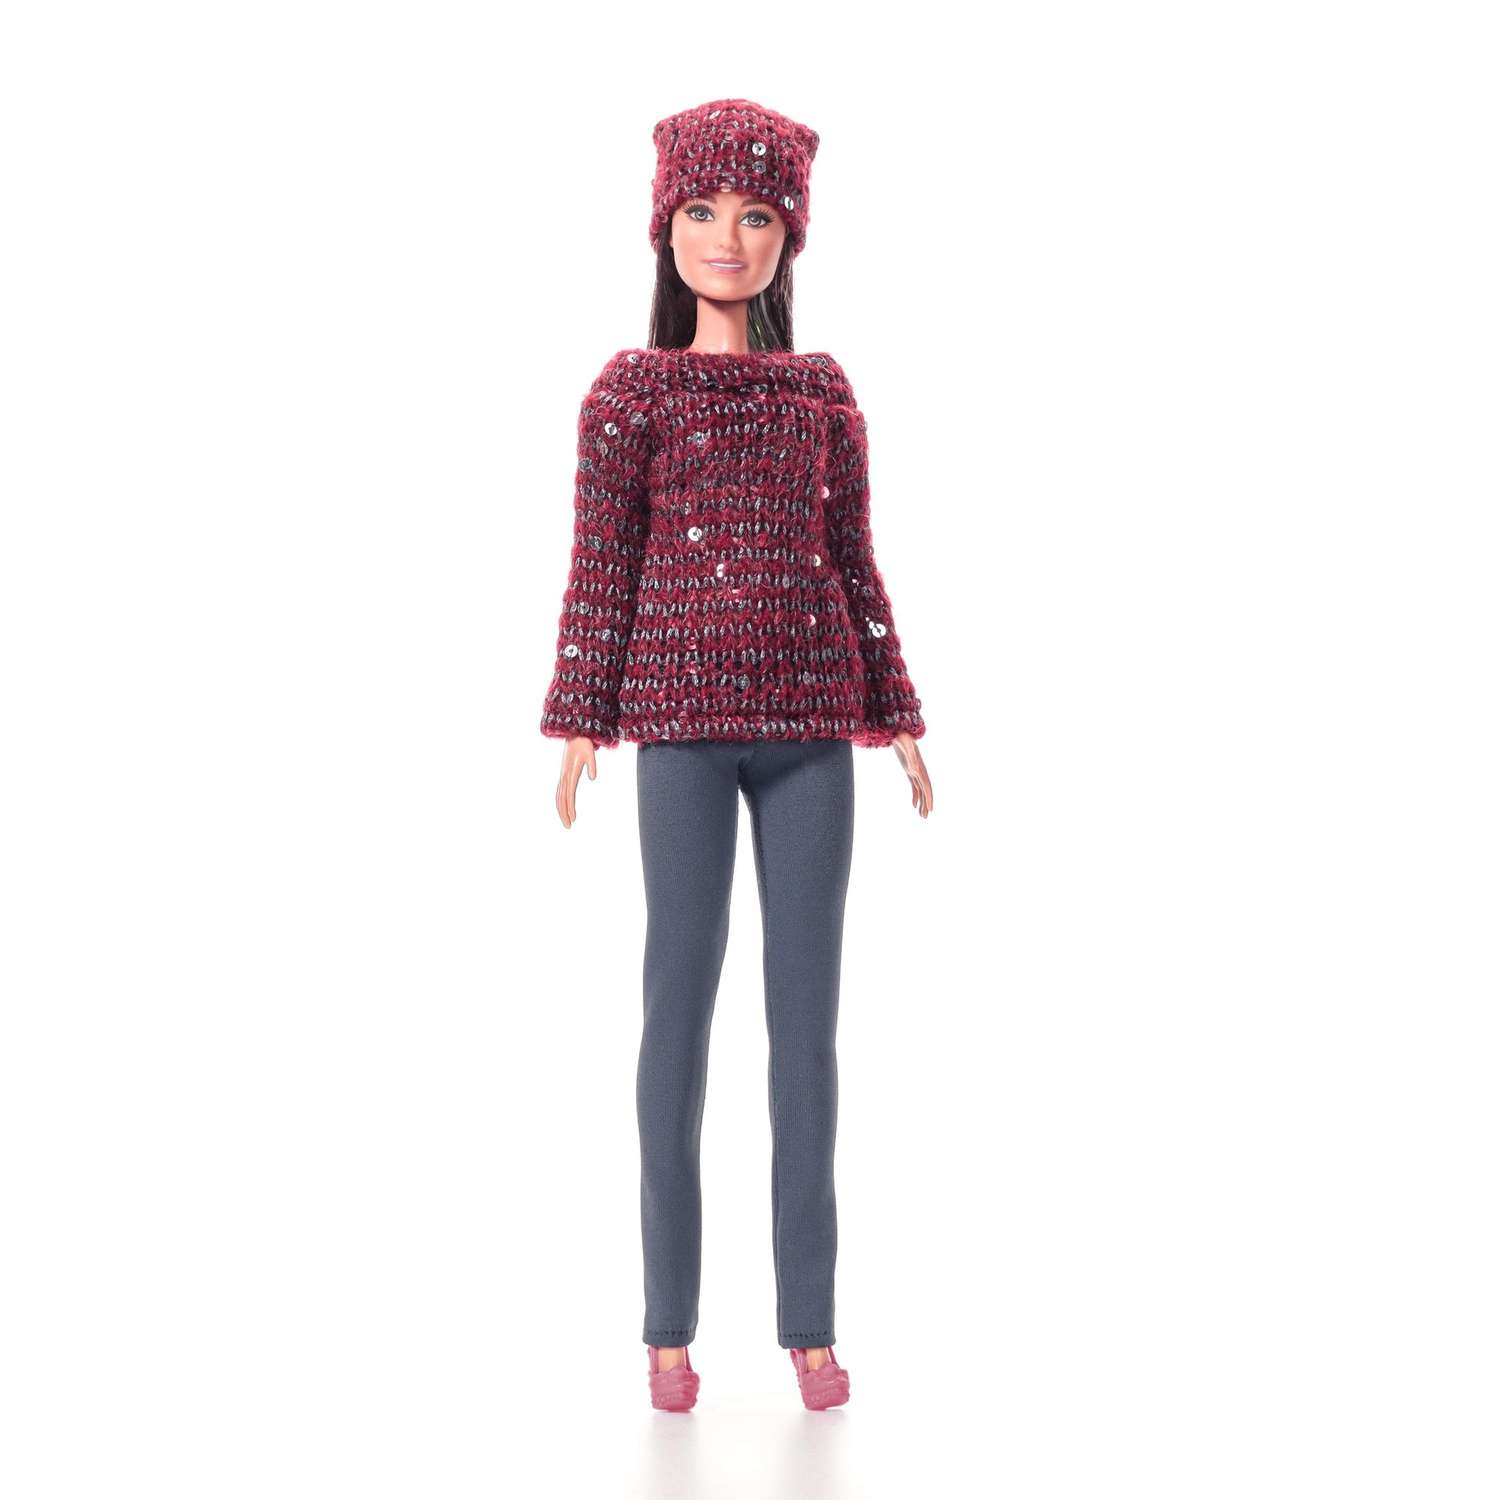 Одежда для кукол VIANA типа Барби 11.235.6 бордо/серый 11.235.6 - фото 2